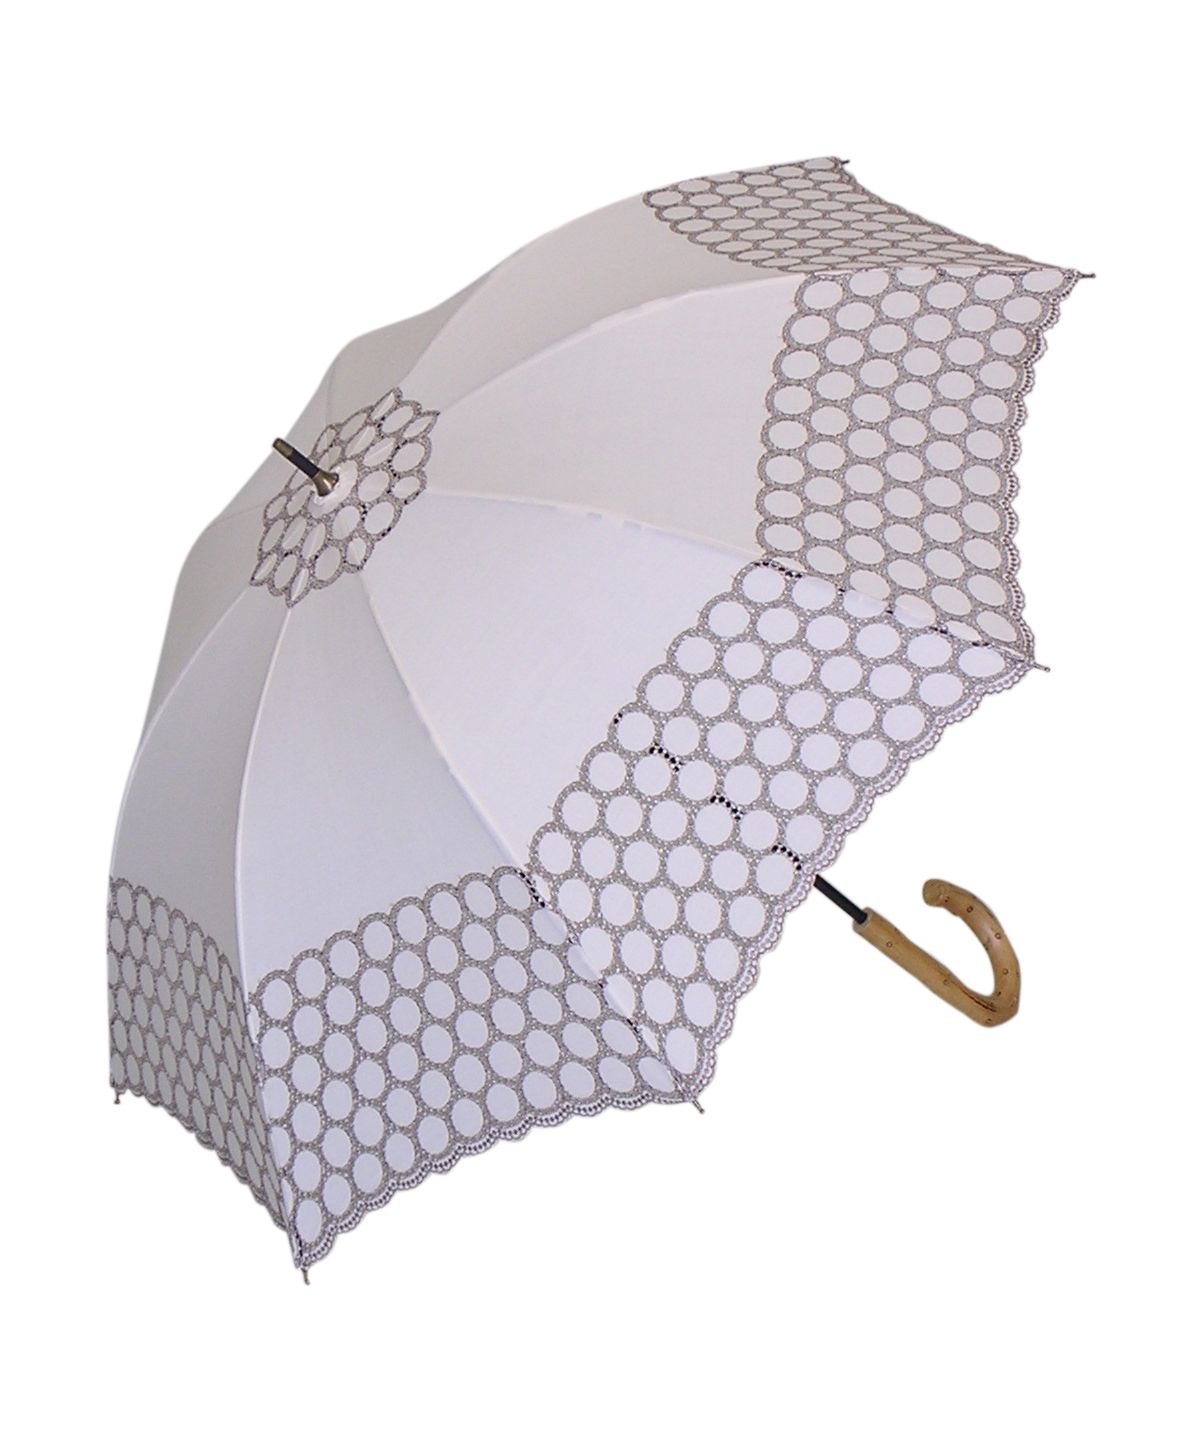 日傘 長傘 完全遮光 遮光率99% 軽量 遮光 晴専用 UVカット GENUINE